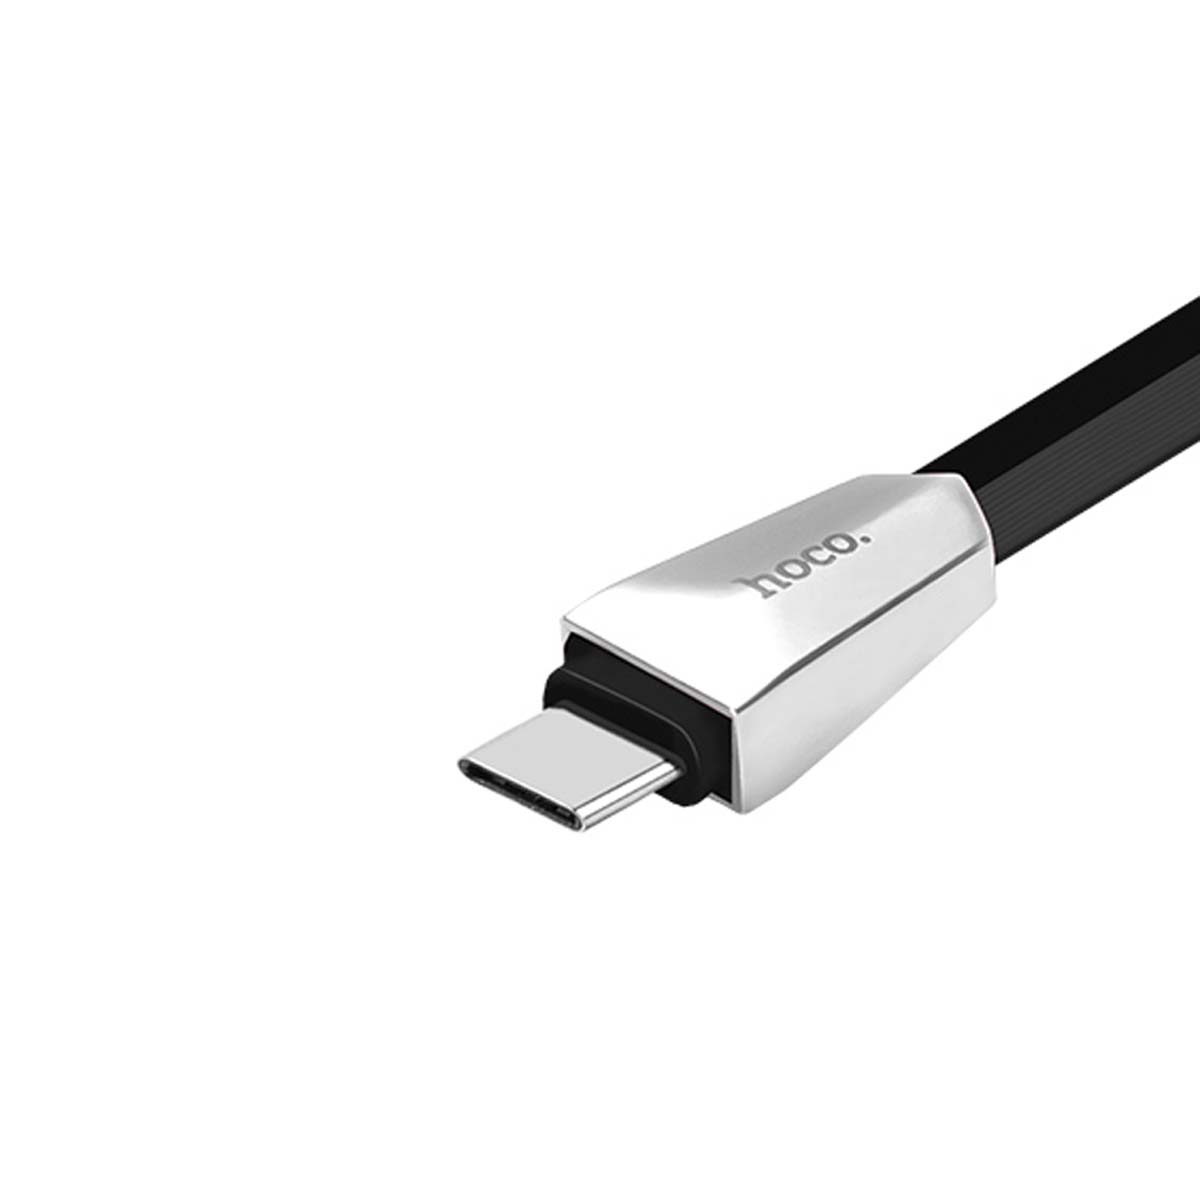 Кабель HOCO X4 Zinc Alloy Rhombus USB Type C, длина 1.2 метра, цвет черный